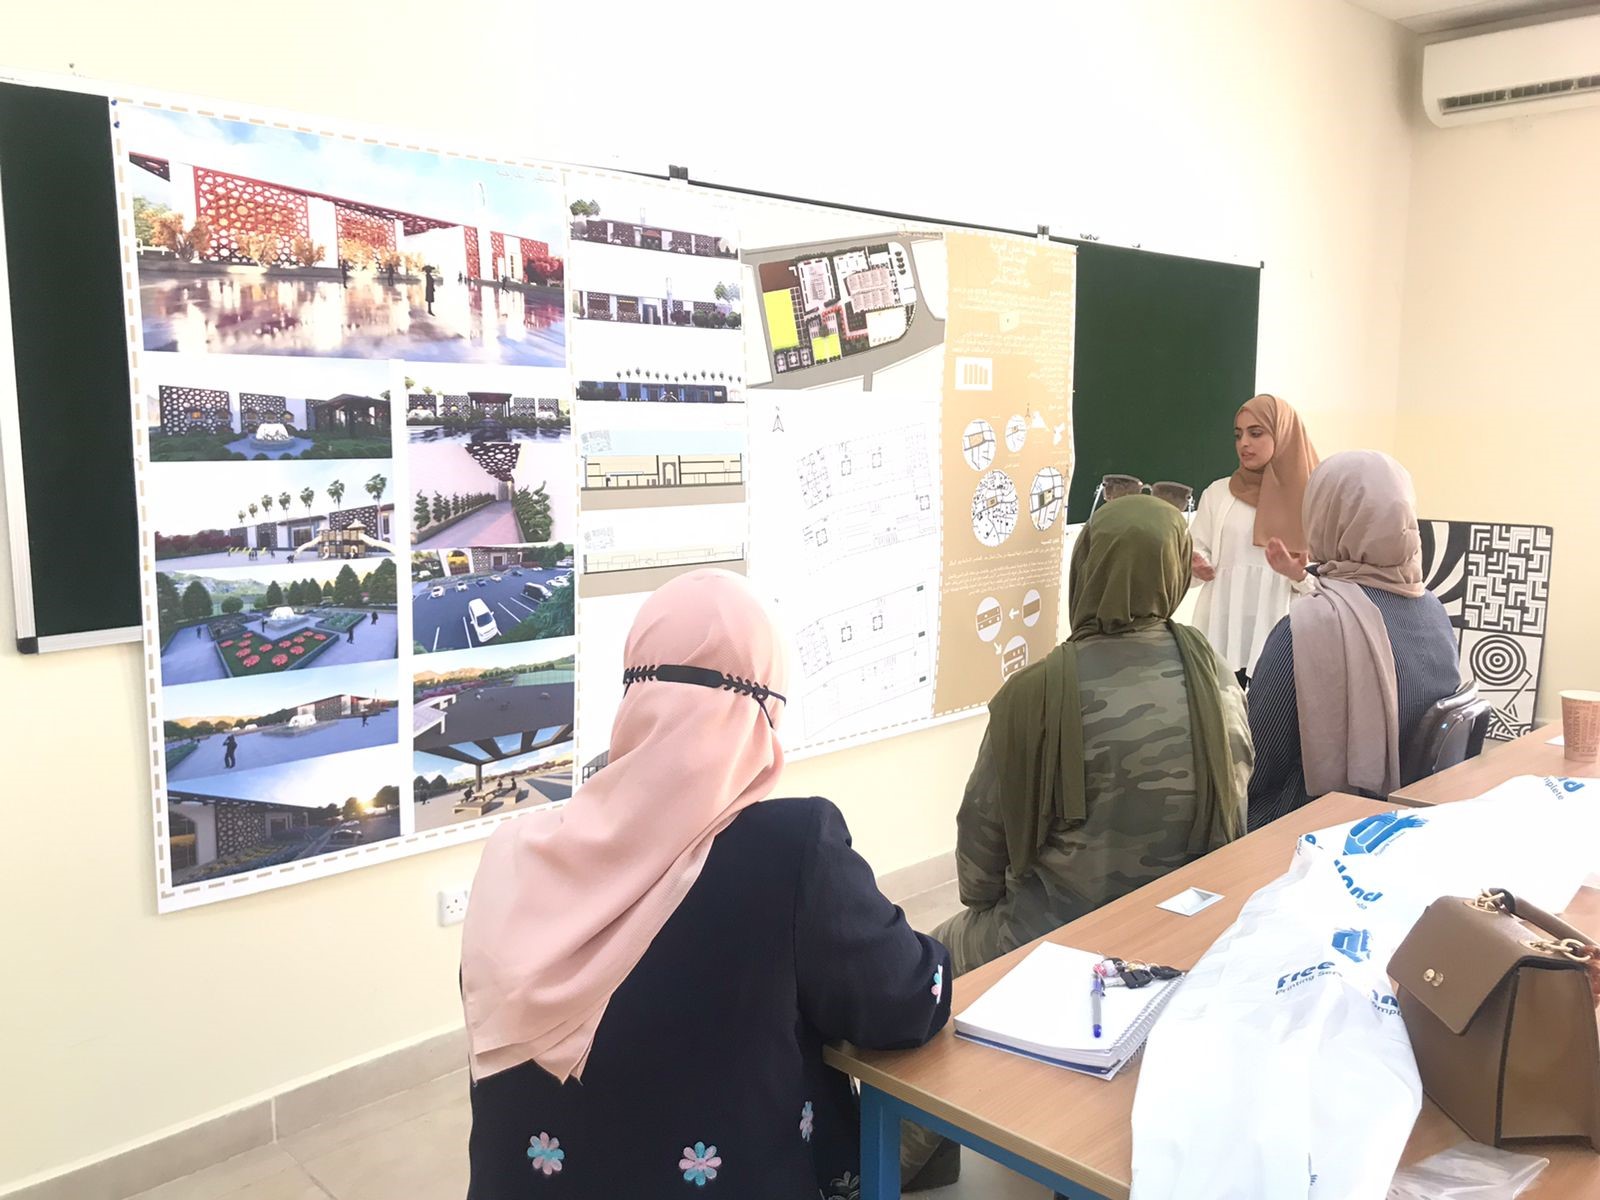 مشروع تخرج لطالبة هندسة العمارة في “عمان العربية”1